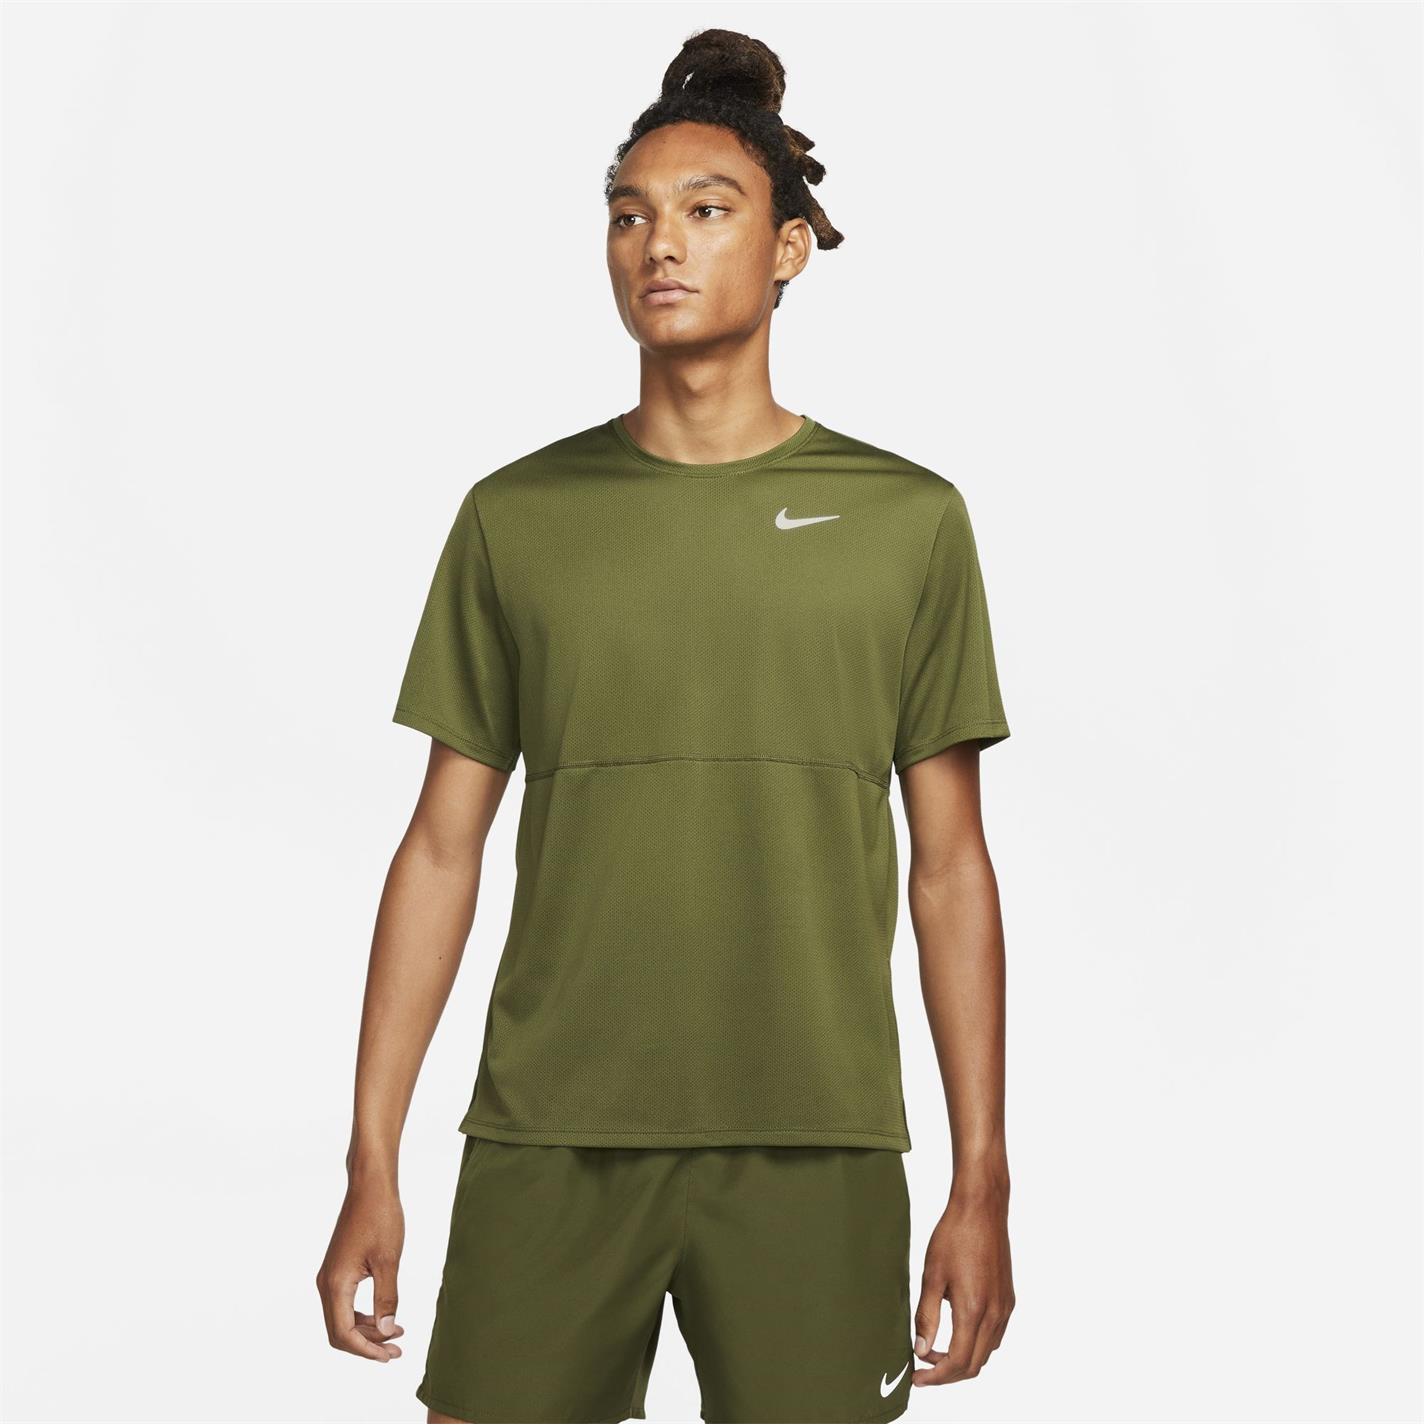 Tricou Nike Run Breathe pentru Barbati rough verde